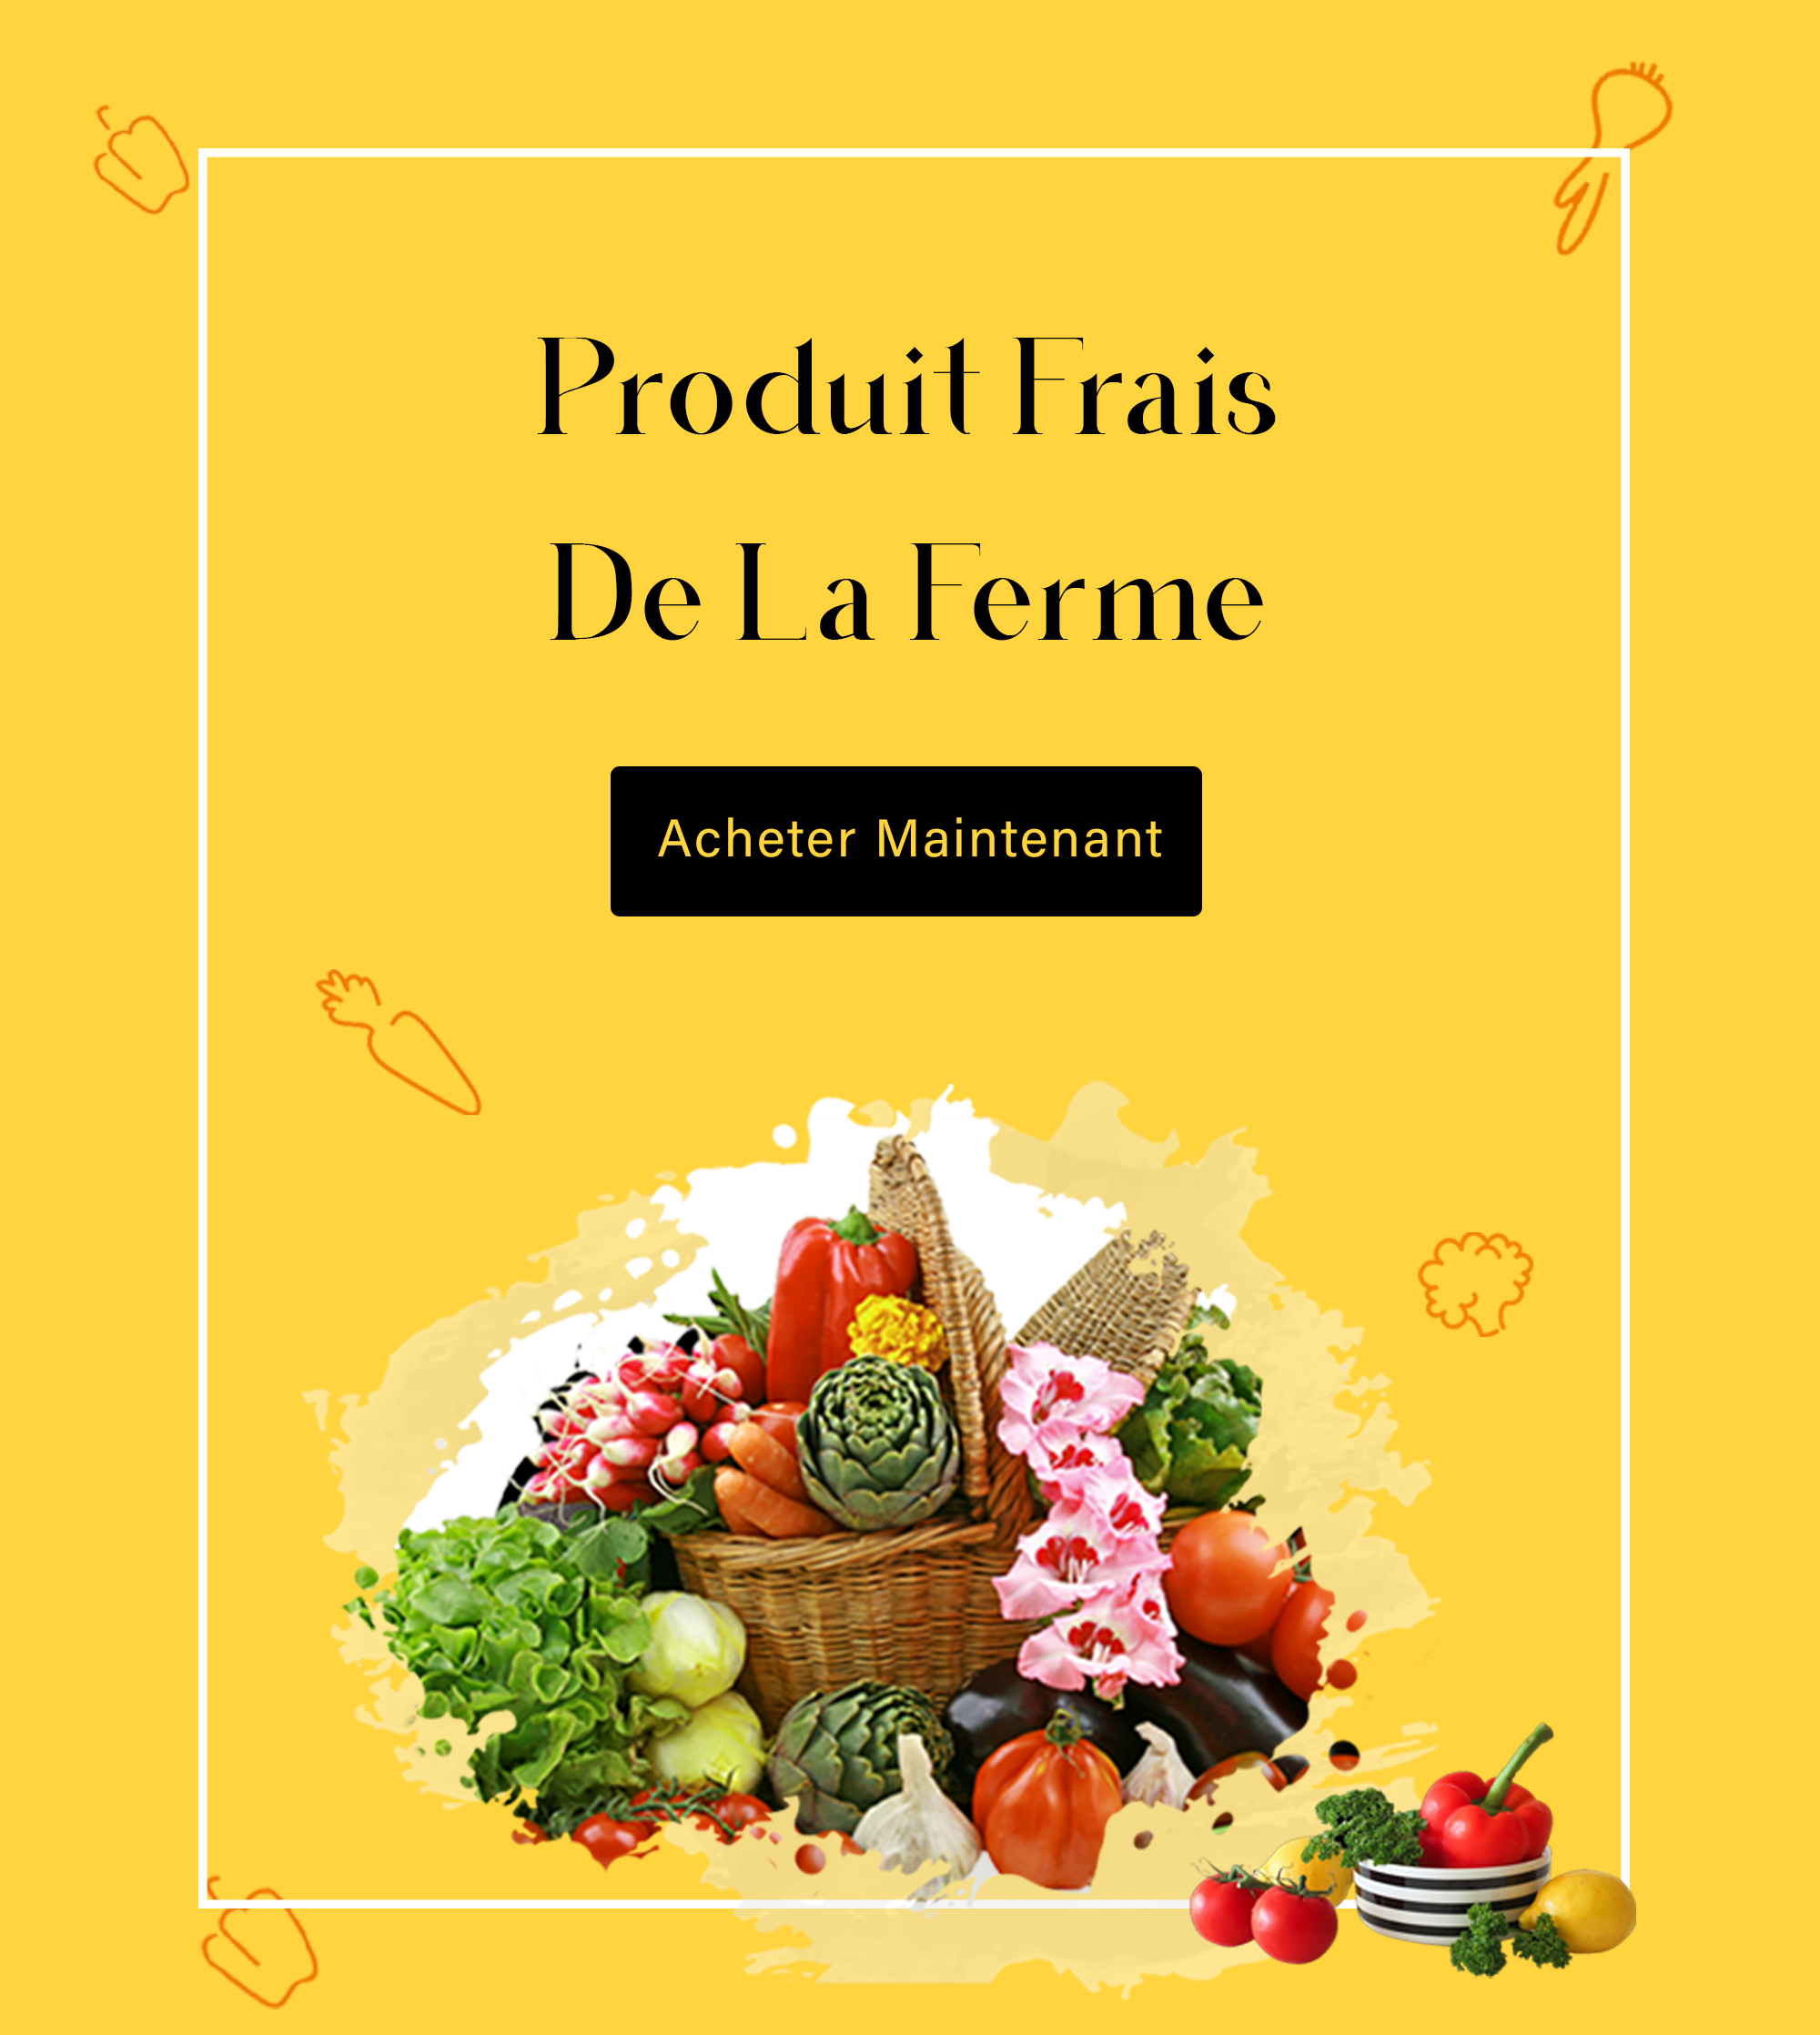 Vendre des produits alimentaires italiens en France